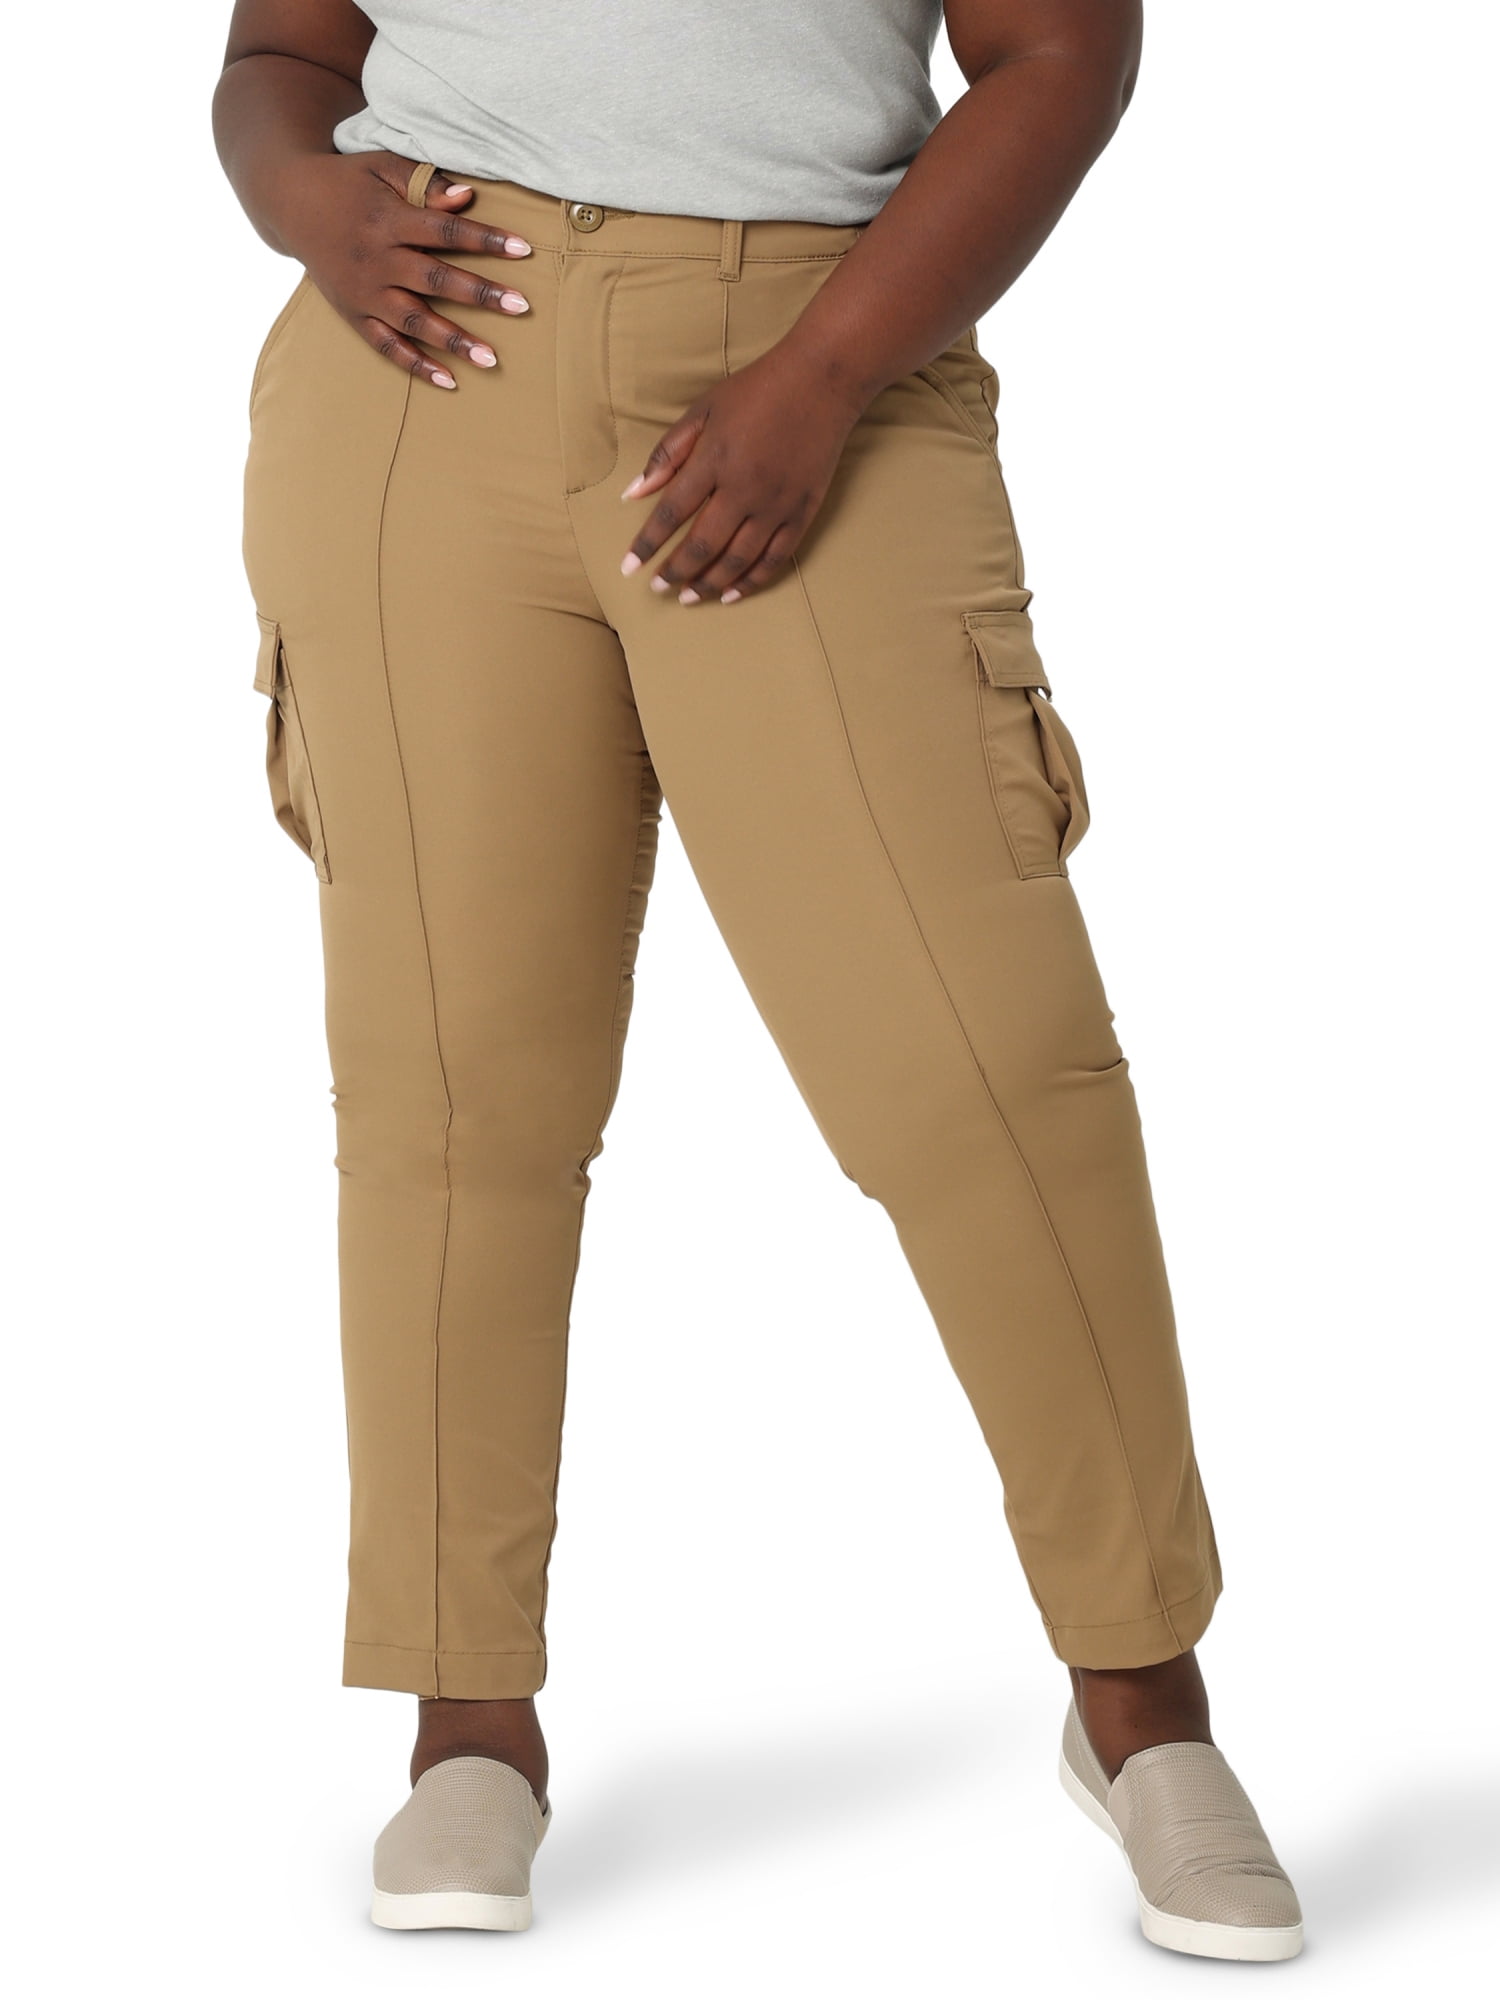 dato indlæg Ingeniører Lee® Women's Plus Size Flex To Go Seamed Cargo Pant - Walmart.com